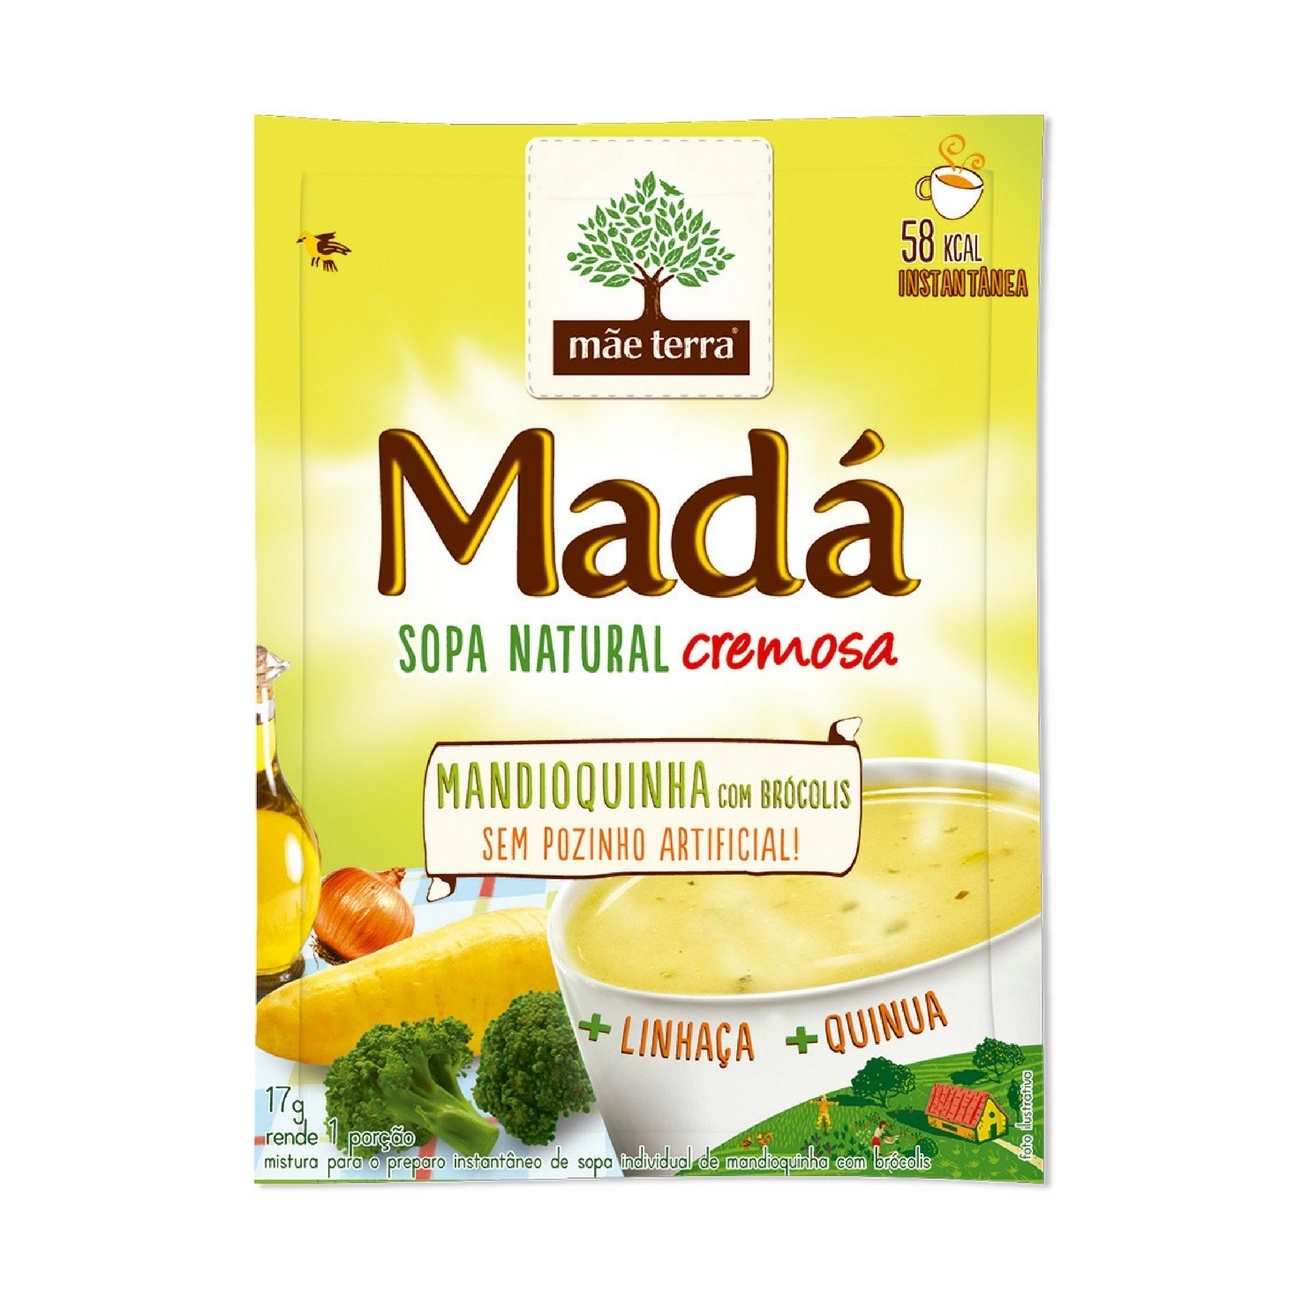 Sopa instantânea Natural Madá Mandioquinha com Brócolis 17g | Display